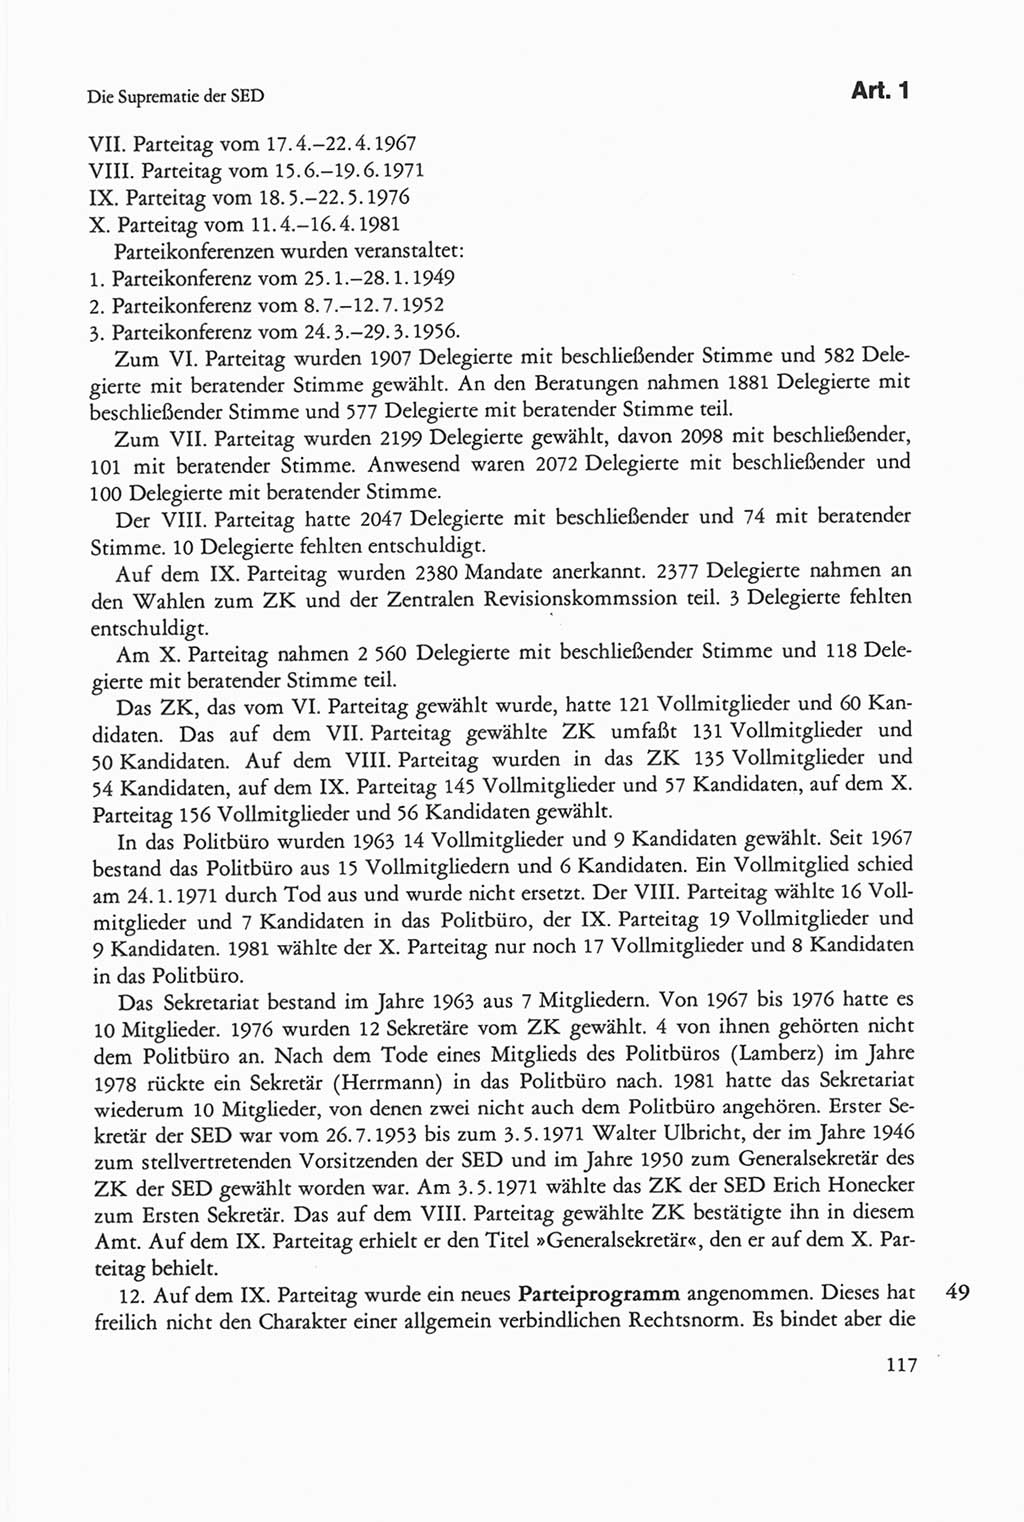 Die sozialistische Verfassung der Deutschen Demokratischen Republik (DDR), Kommentar 1982, Seite 117 (Soz. Verf. DDR Komm. 1982, S. 117)